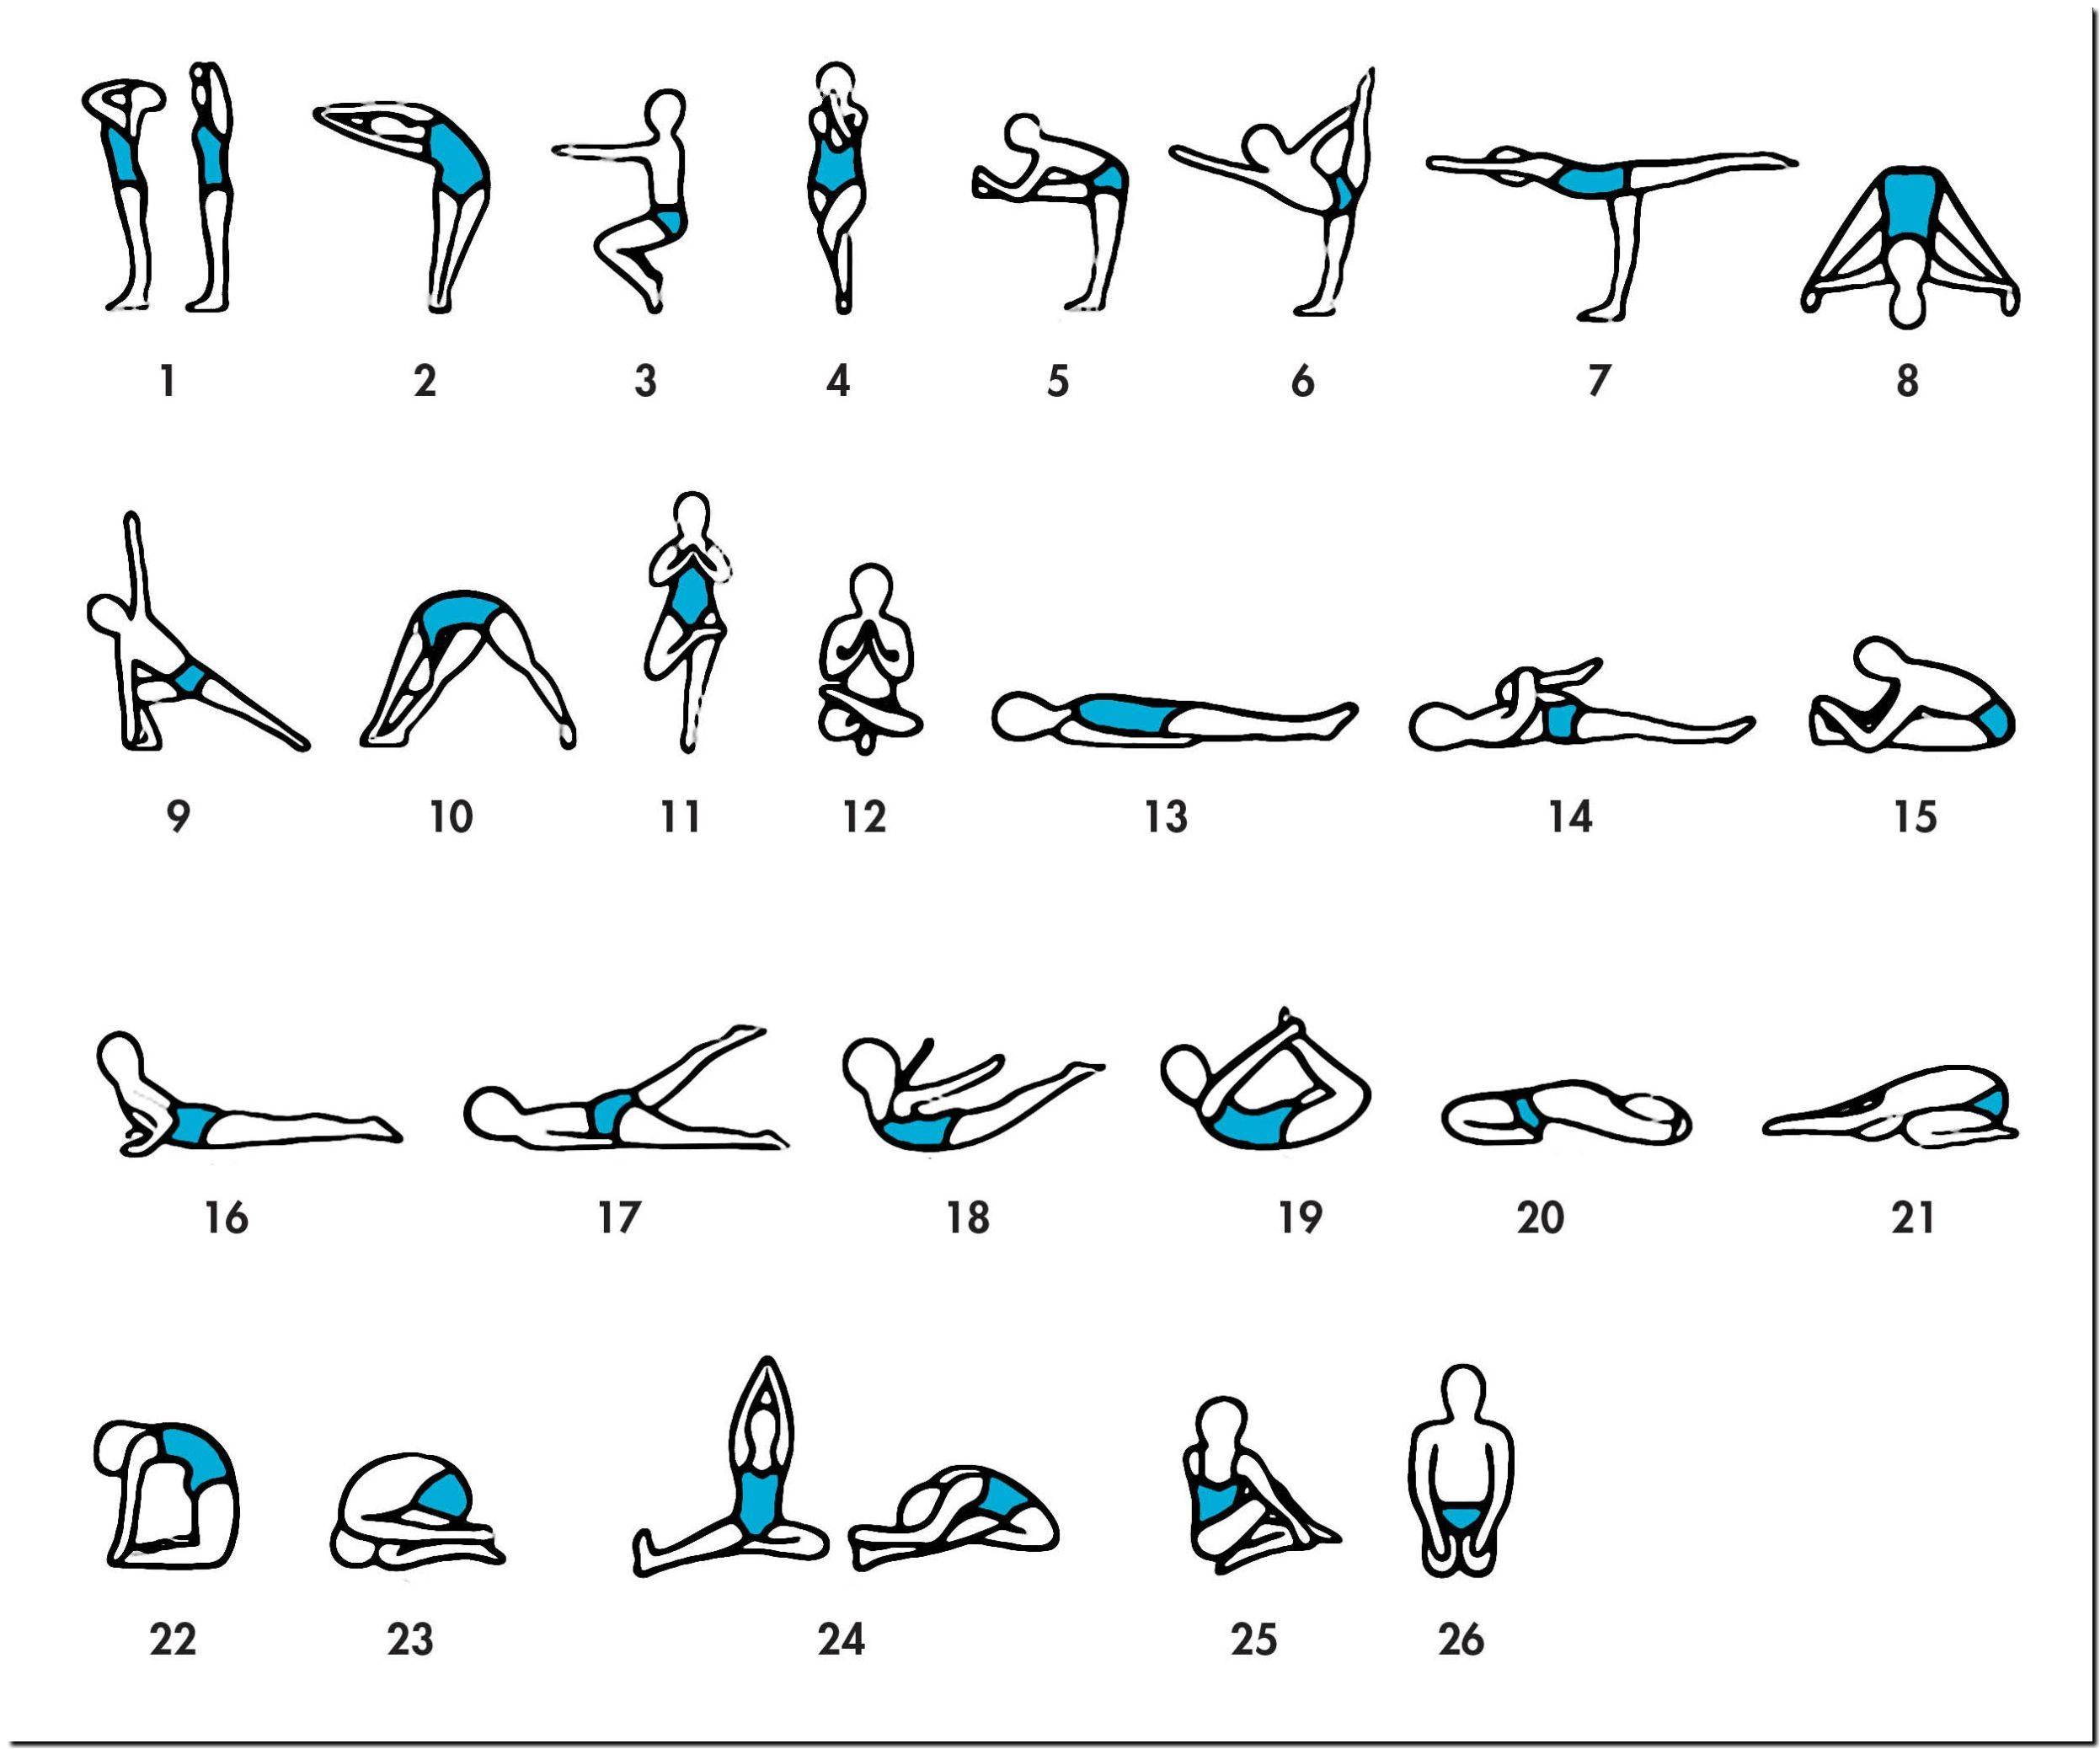 Хатха йога для начинающих — подробное описание практики и рекомендации с чего начать занятия (100 фото)